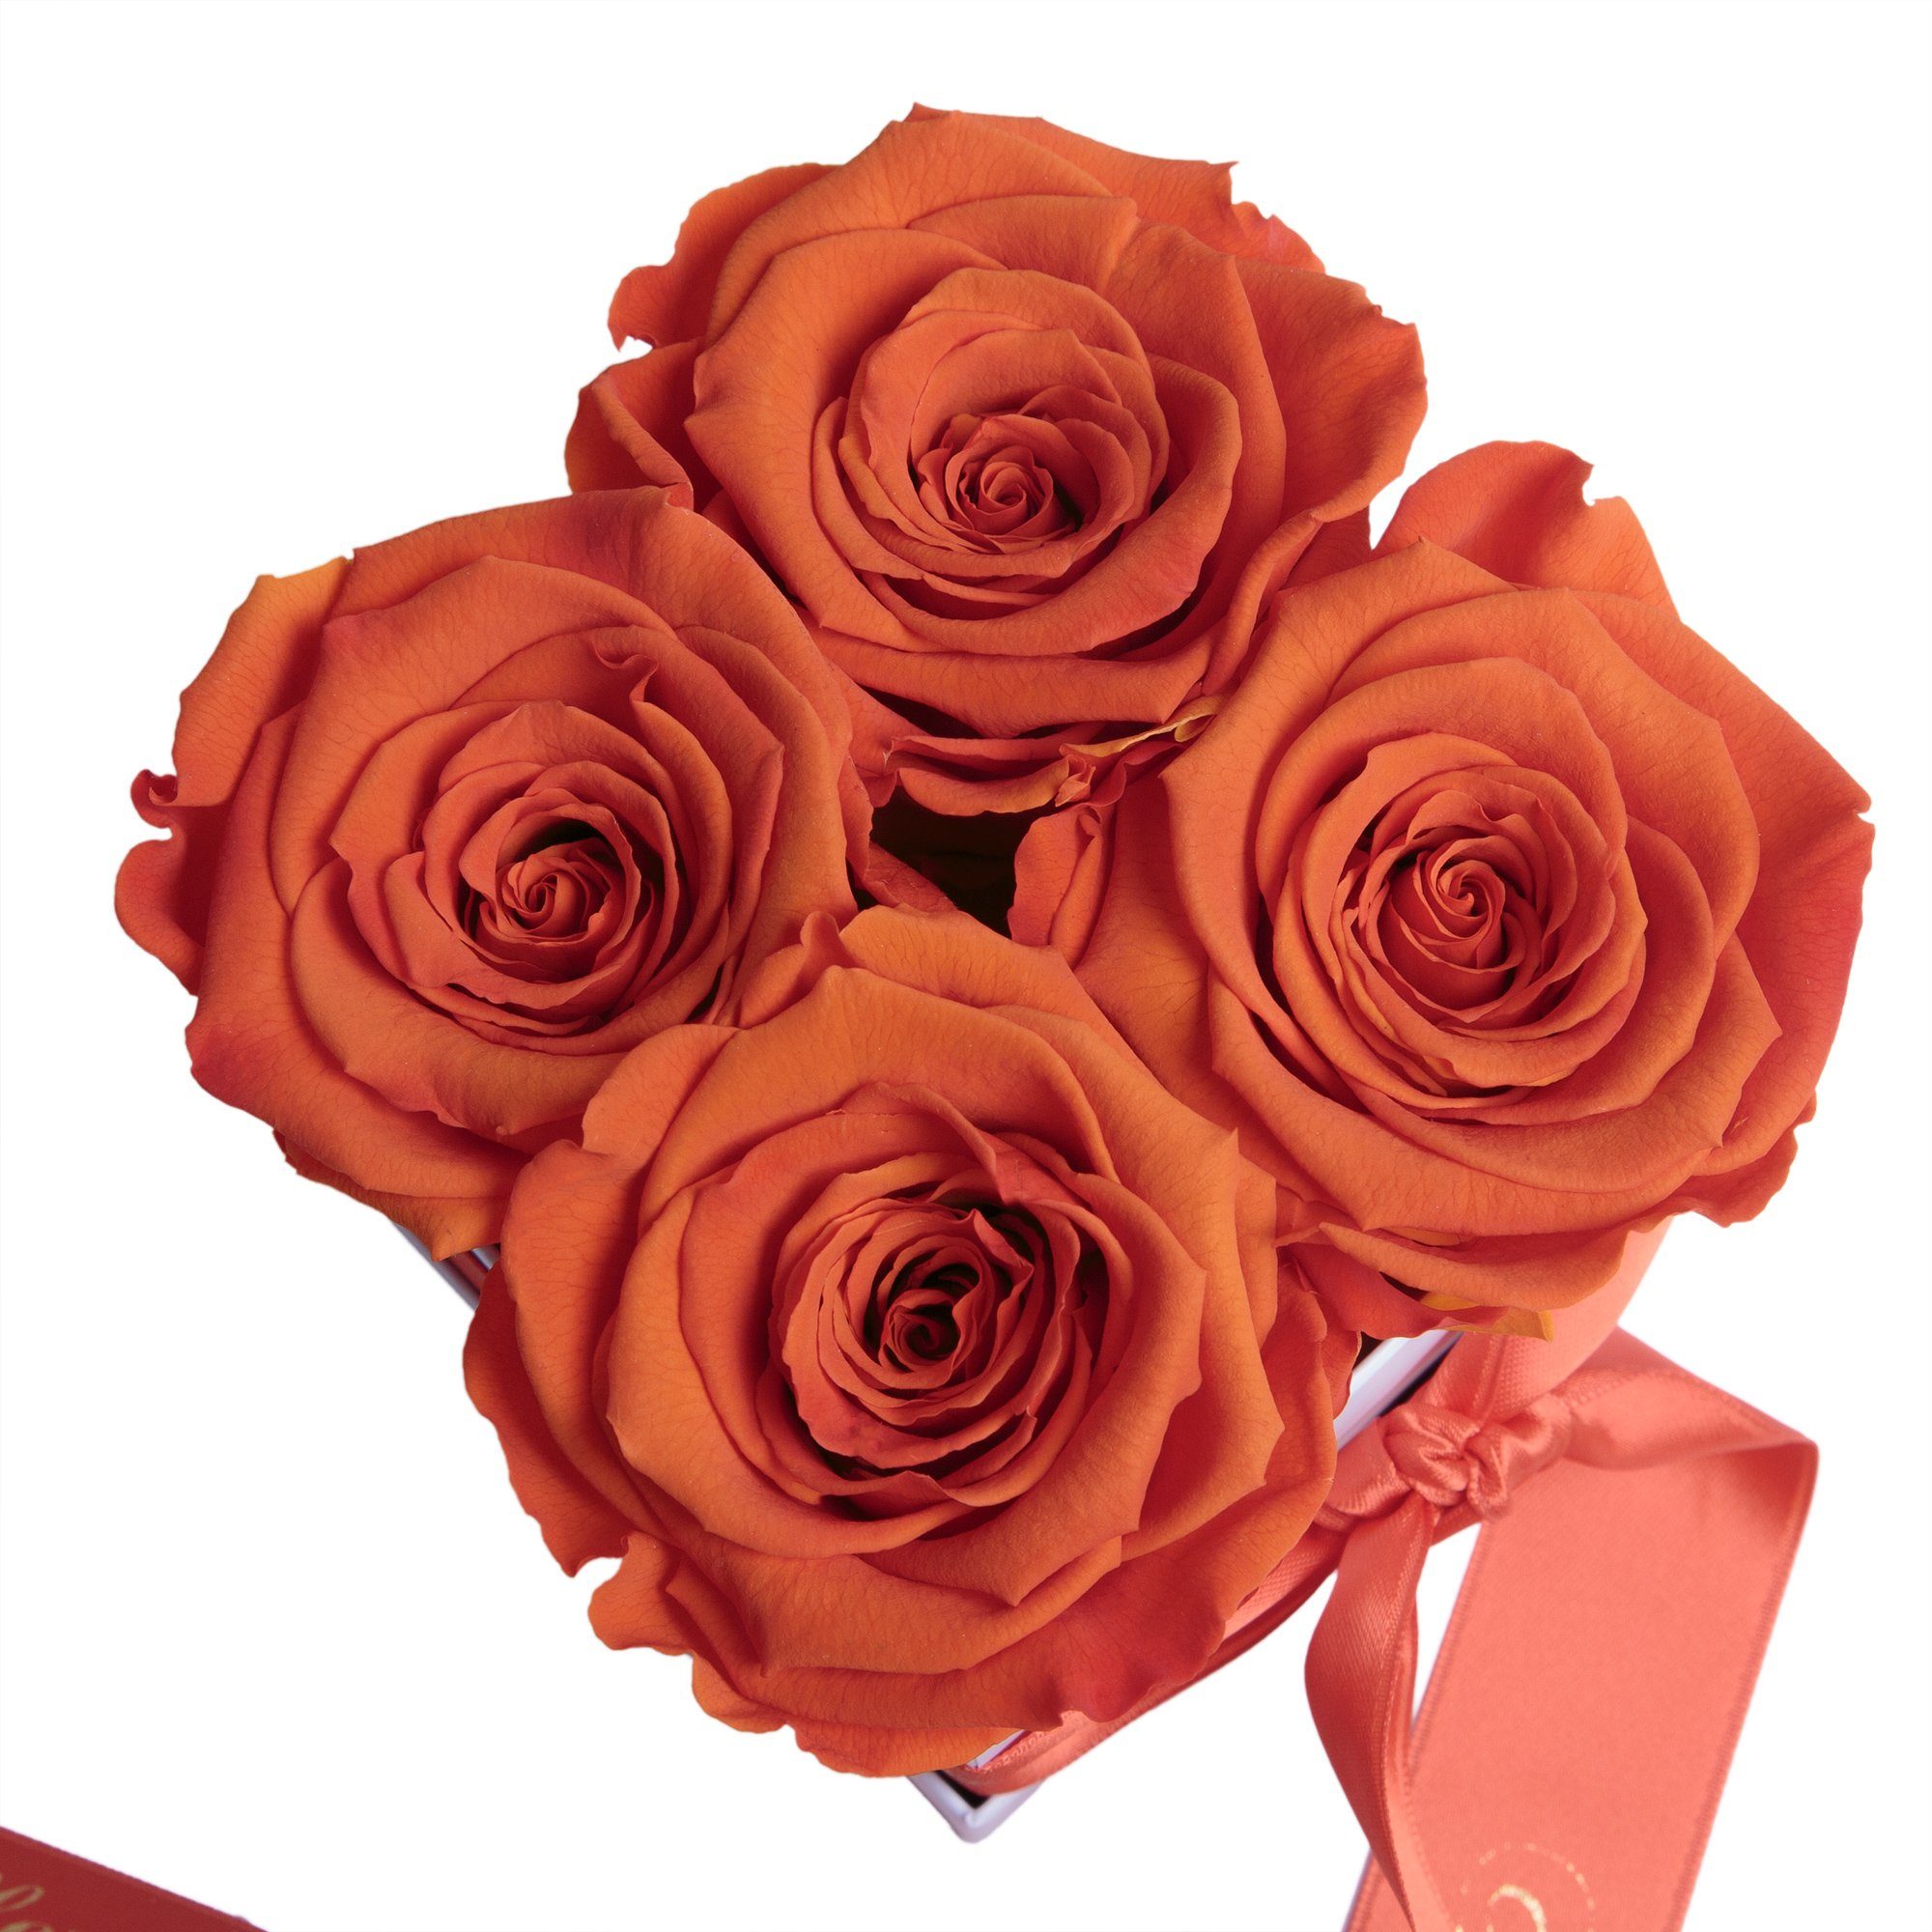 SCHULZ bis haltbar orange ROSEMARIE Liebe Jahre Geschenk, Rose Blumen Heidelberg Rosenbox Infinity 3 Echte Geburtstag Dekoobjekt zu zum Alles